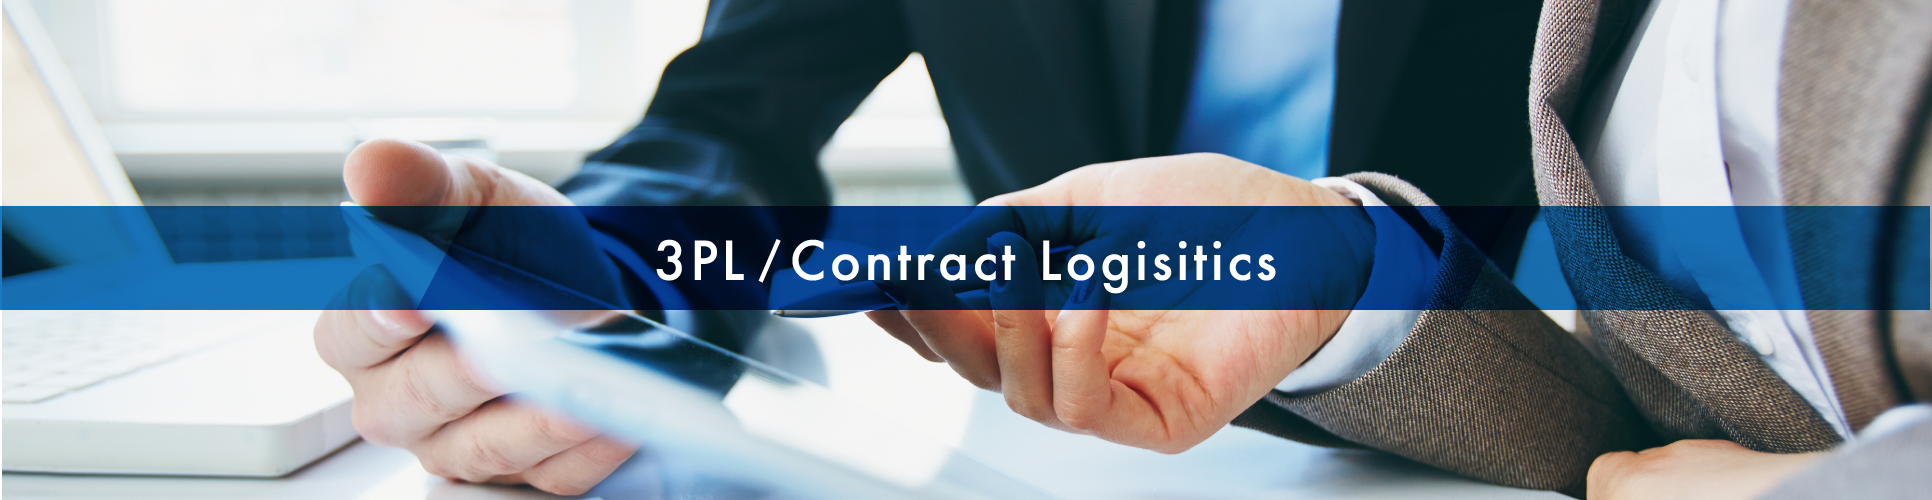 3PL/Contract Logistics